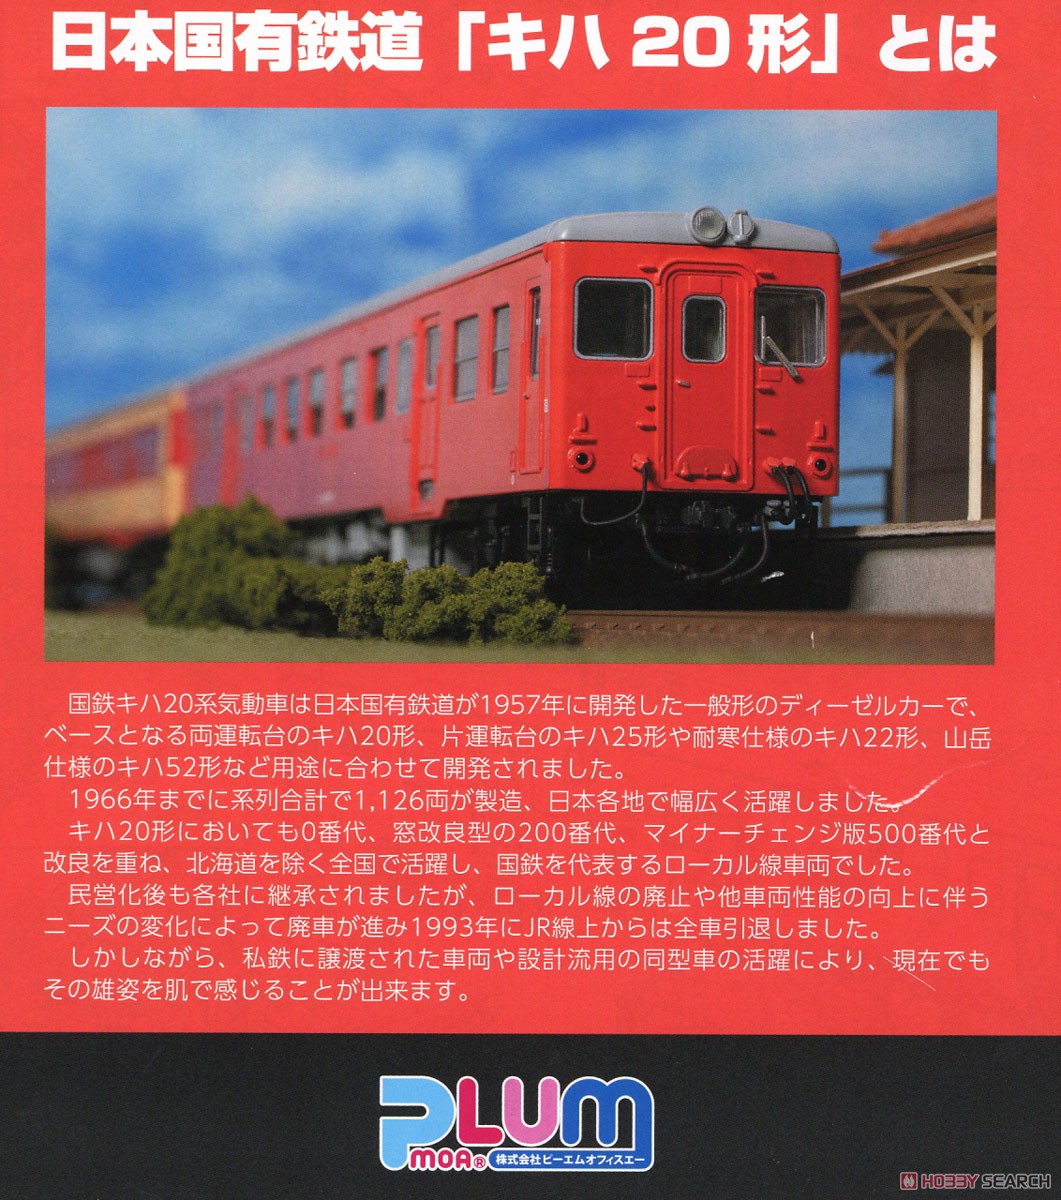 16番(HO) 日本国有鉄道 キハ20形気動車200番代タイプ キット (組み立てキット) (鉄道模型) 解説1